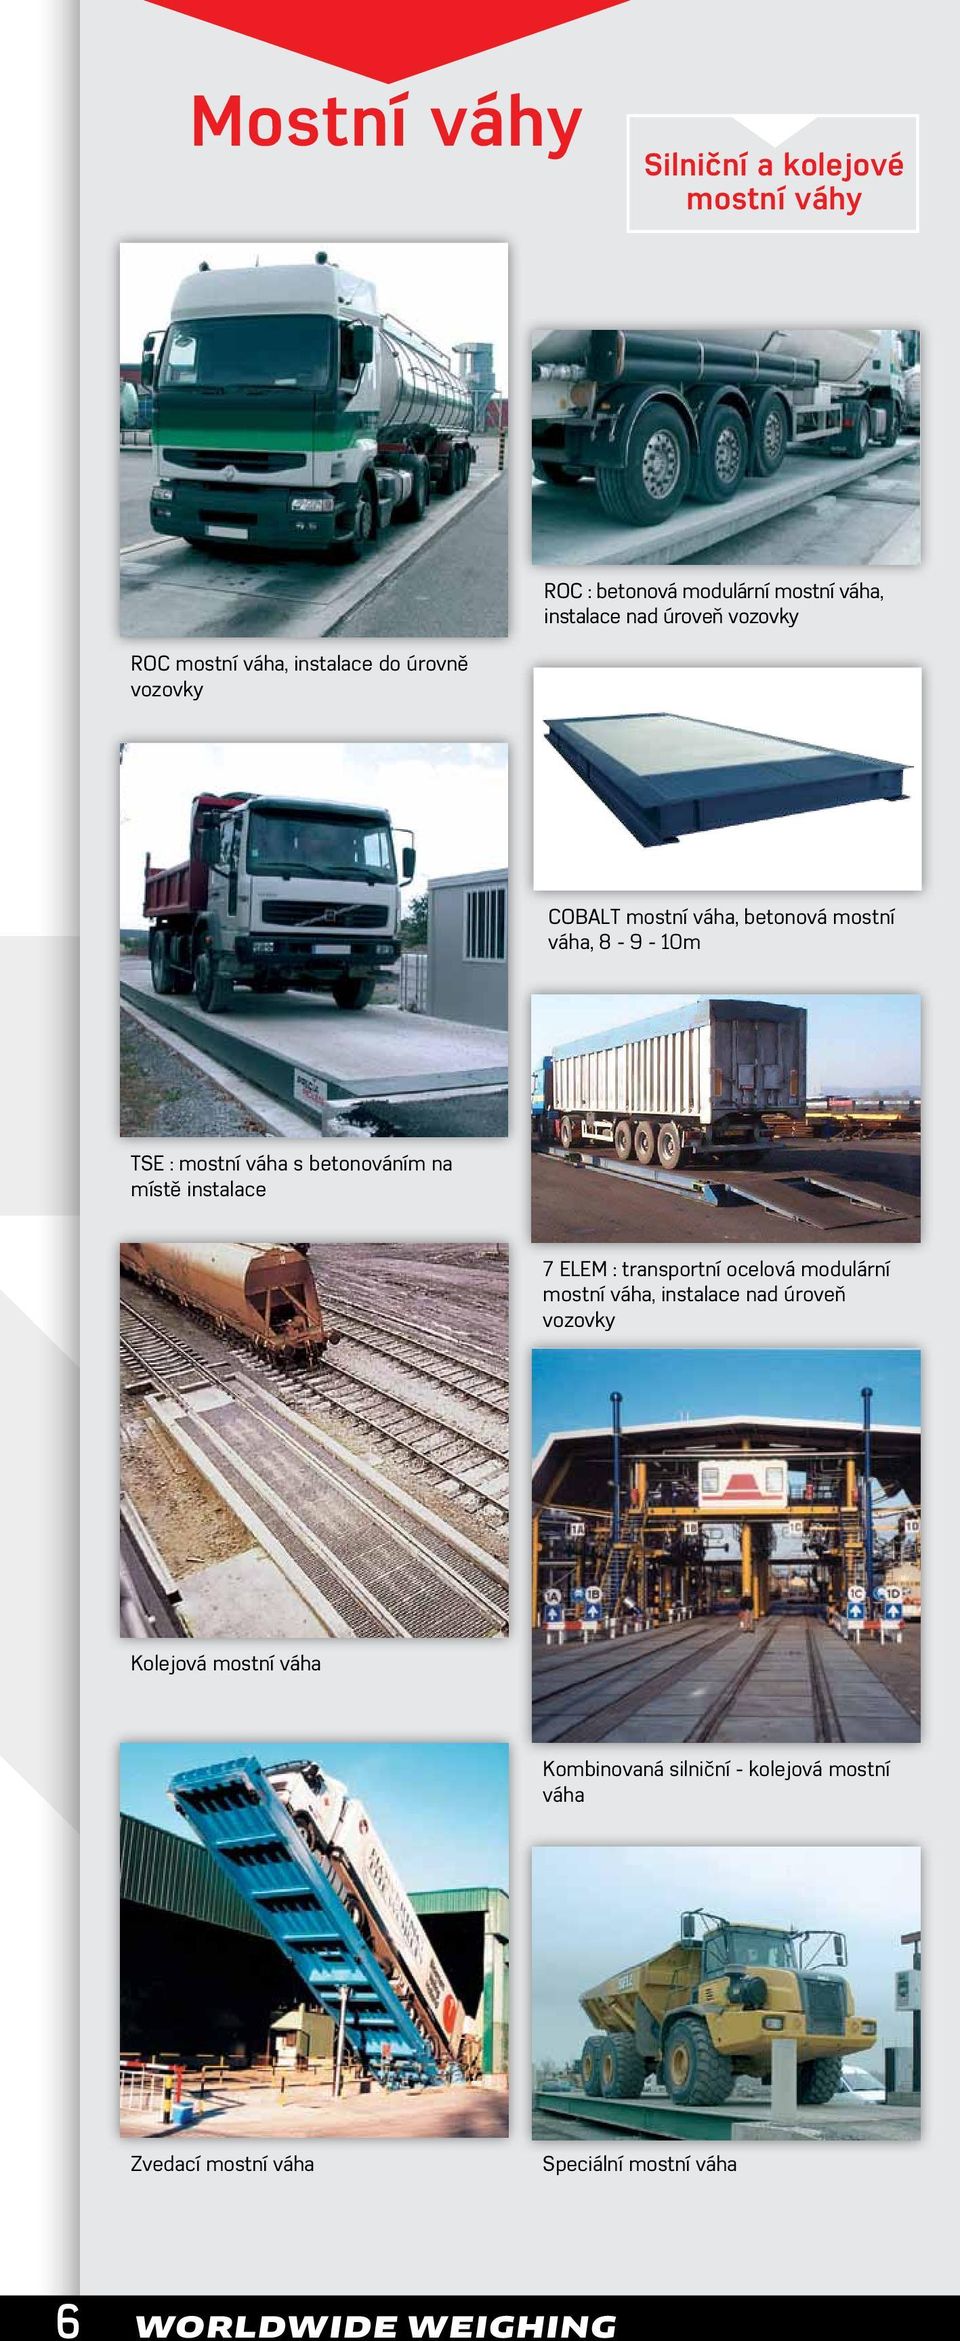 betonováním na místě instalace 7 ELEM : transportní ocelová modulární mostní váha, instalace nad úroveň vozovky